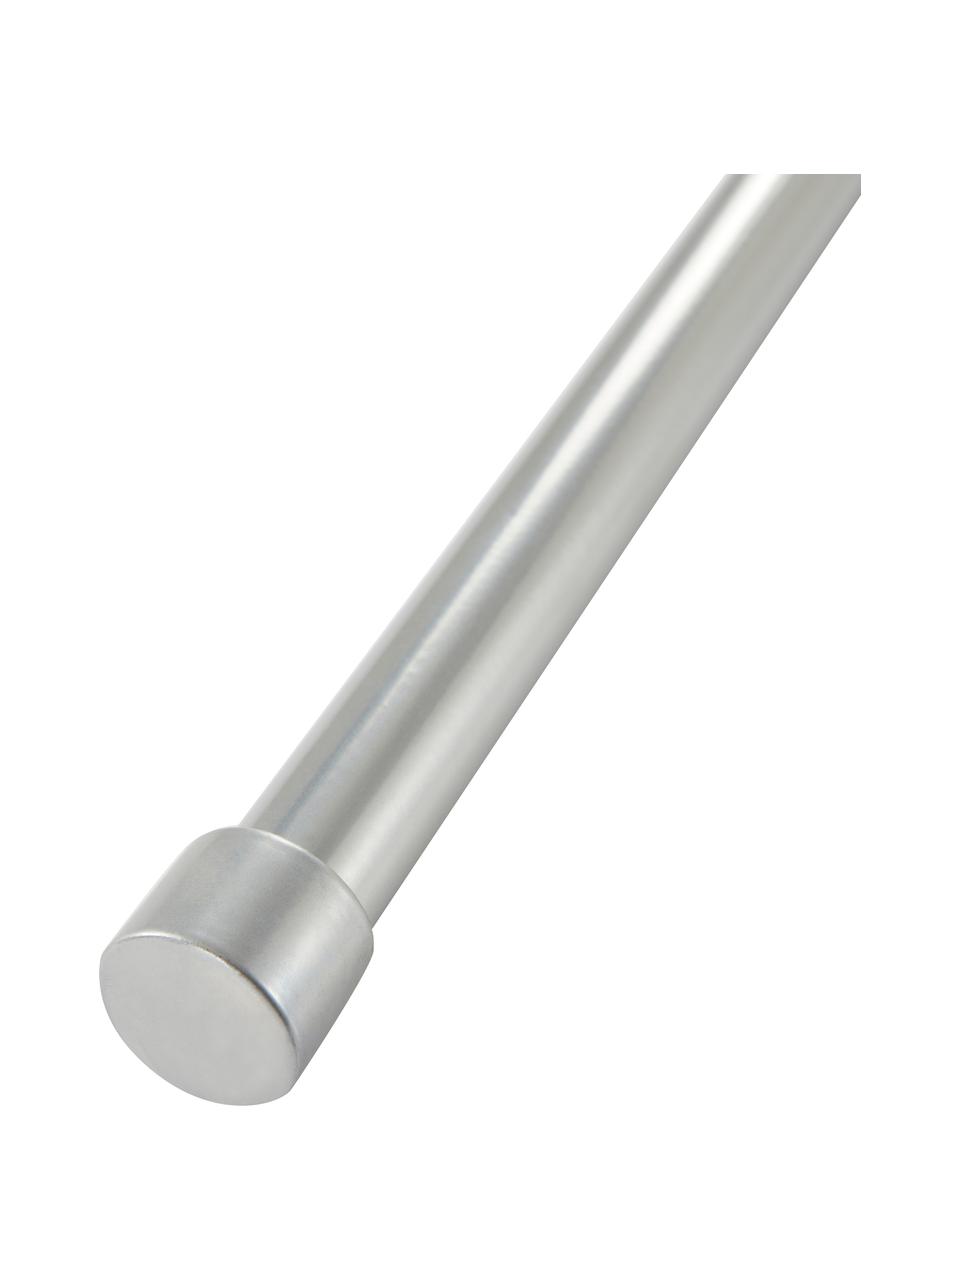 Gordijnroede Basic in zilver, B 67-180 cm, Gecoat metaal, Zilverkleurig, B 67-180 x H 3 cm